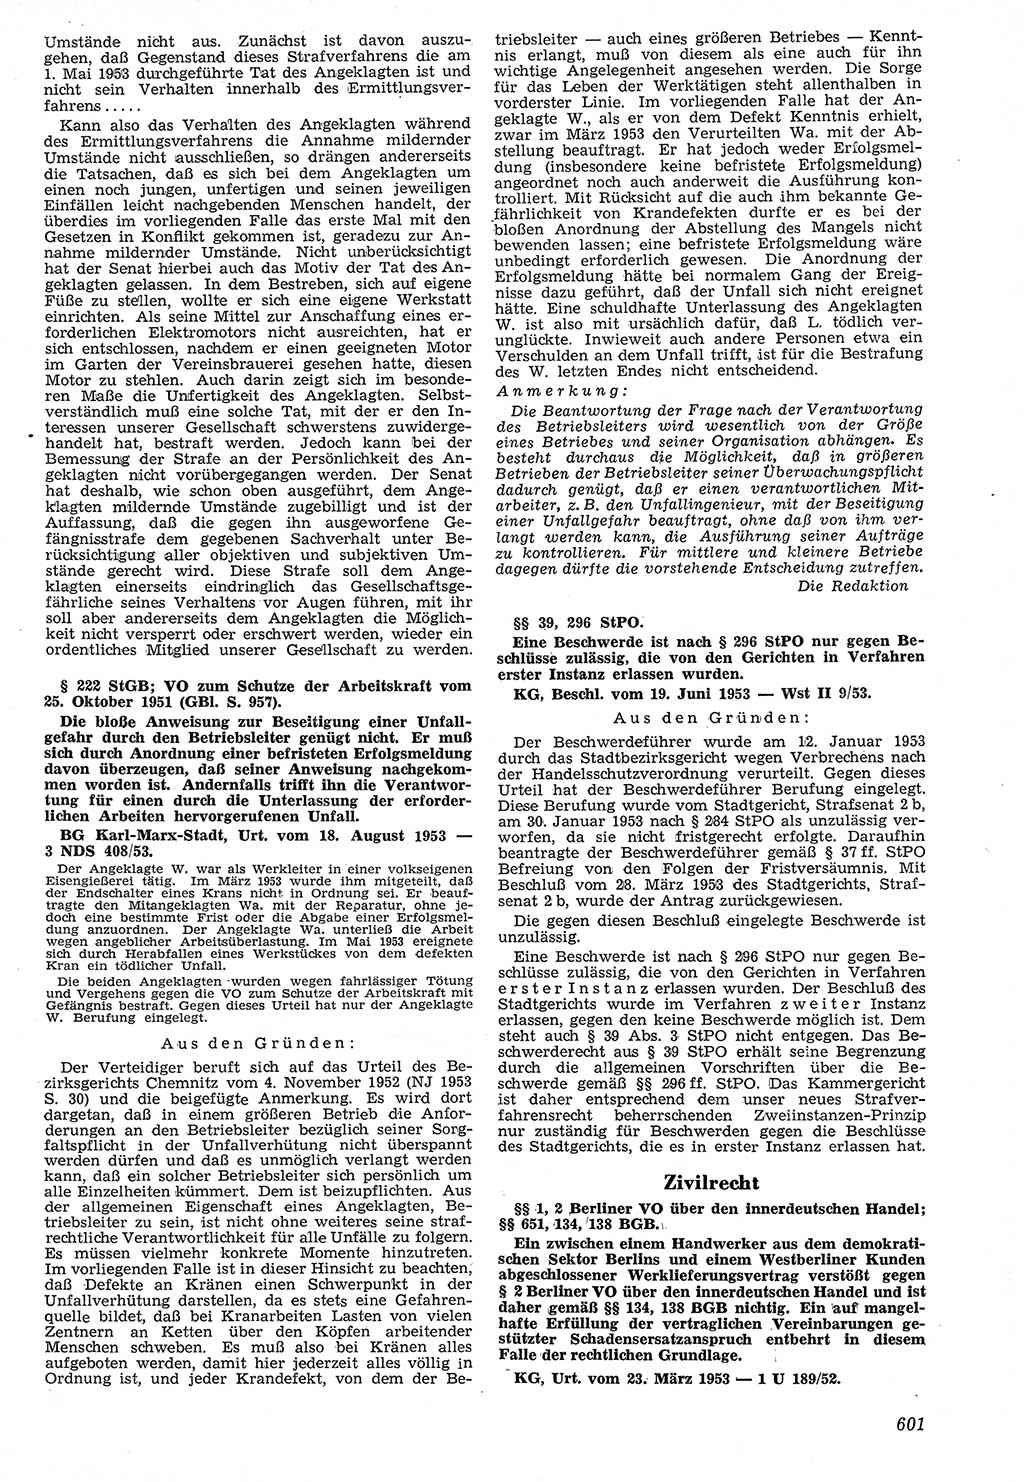 Neue Justiz (NJ), Zeitschrift für Recht und Rechtswissenschaft [Deutsche Demokratische Republik (DDR)], 7. Jahrgang 1953, Seite 601 (NJ DDR 1953, S. 601)